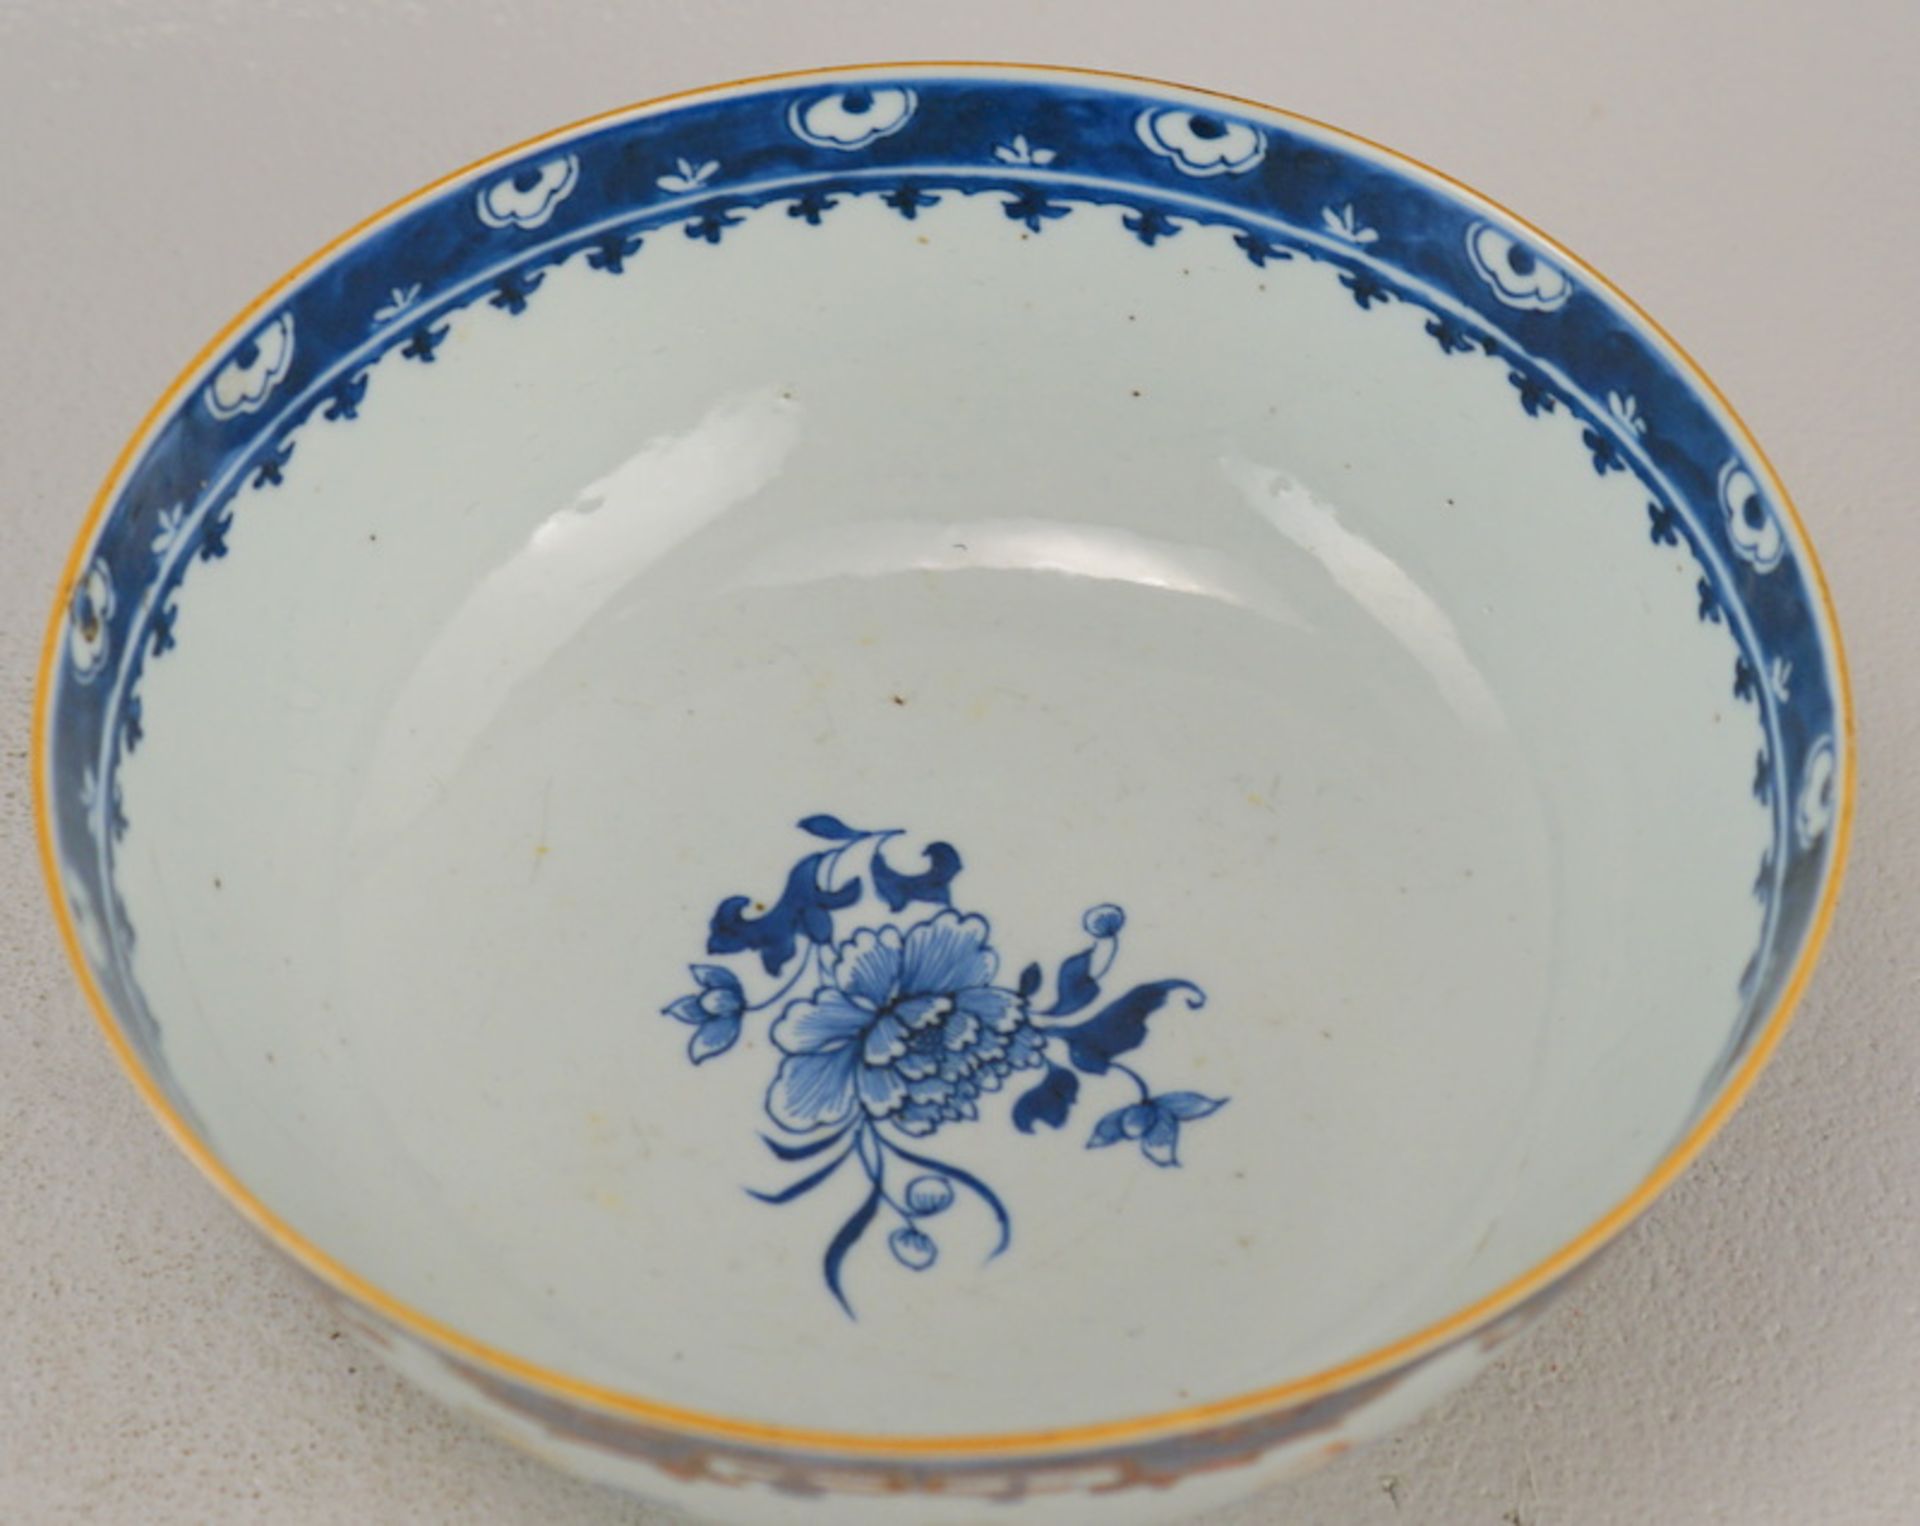 Großer Bowl, Schale Mandarin Dekor ca. 1780-1820, China - Image 4 of 4